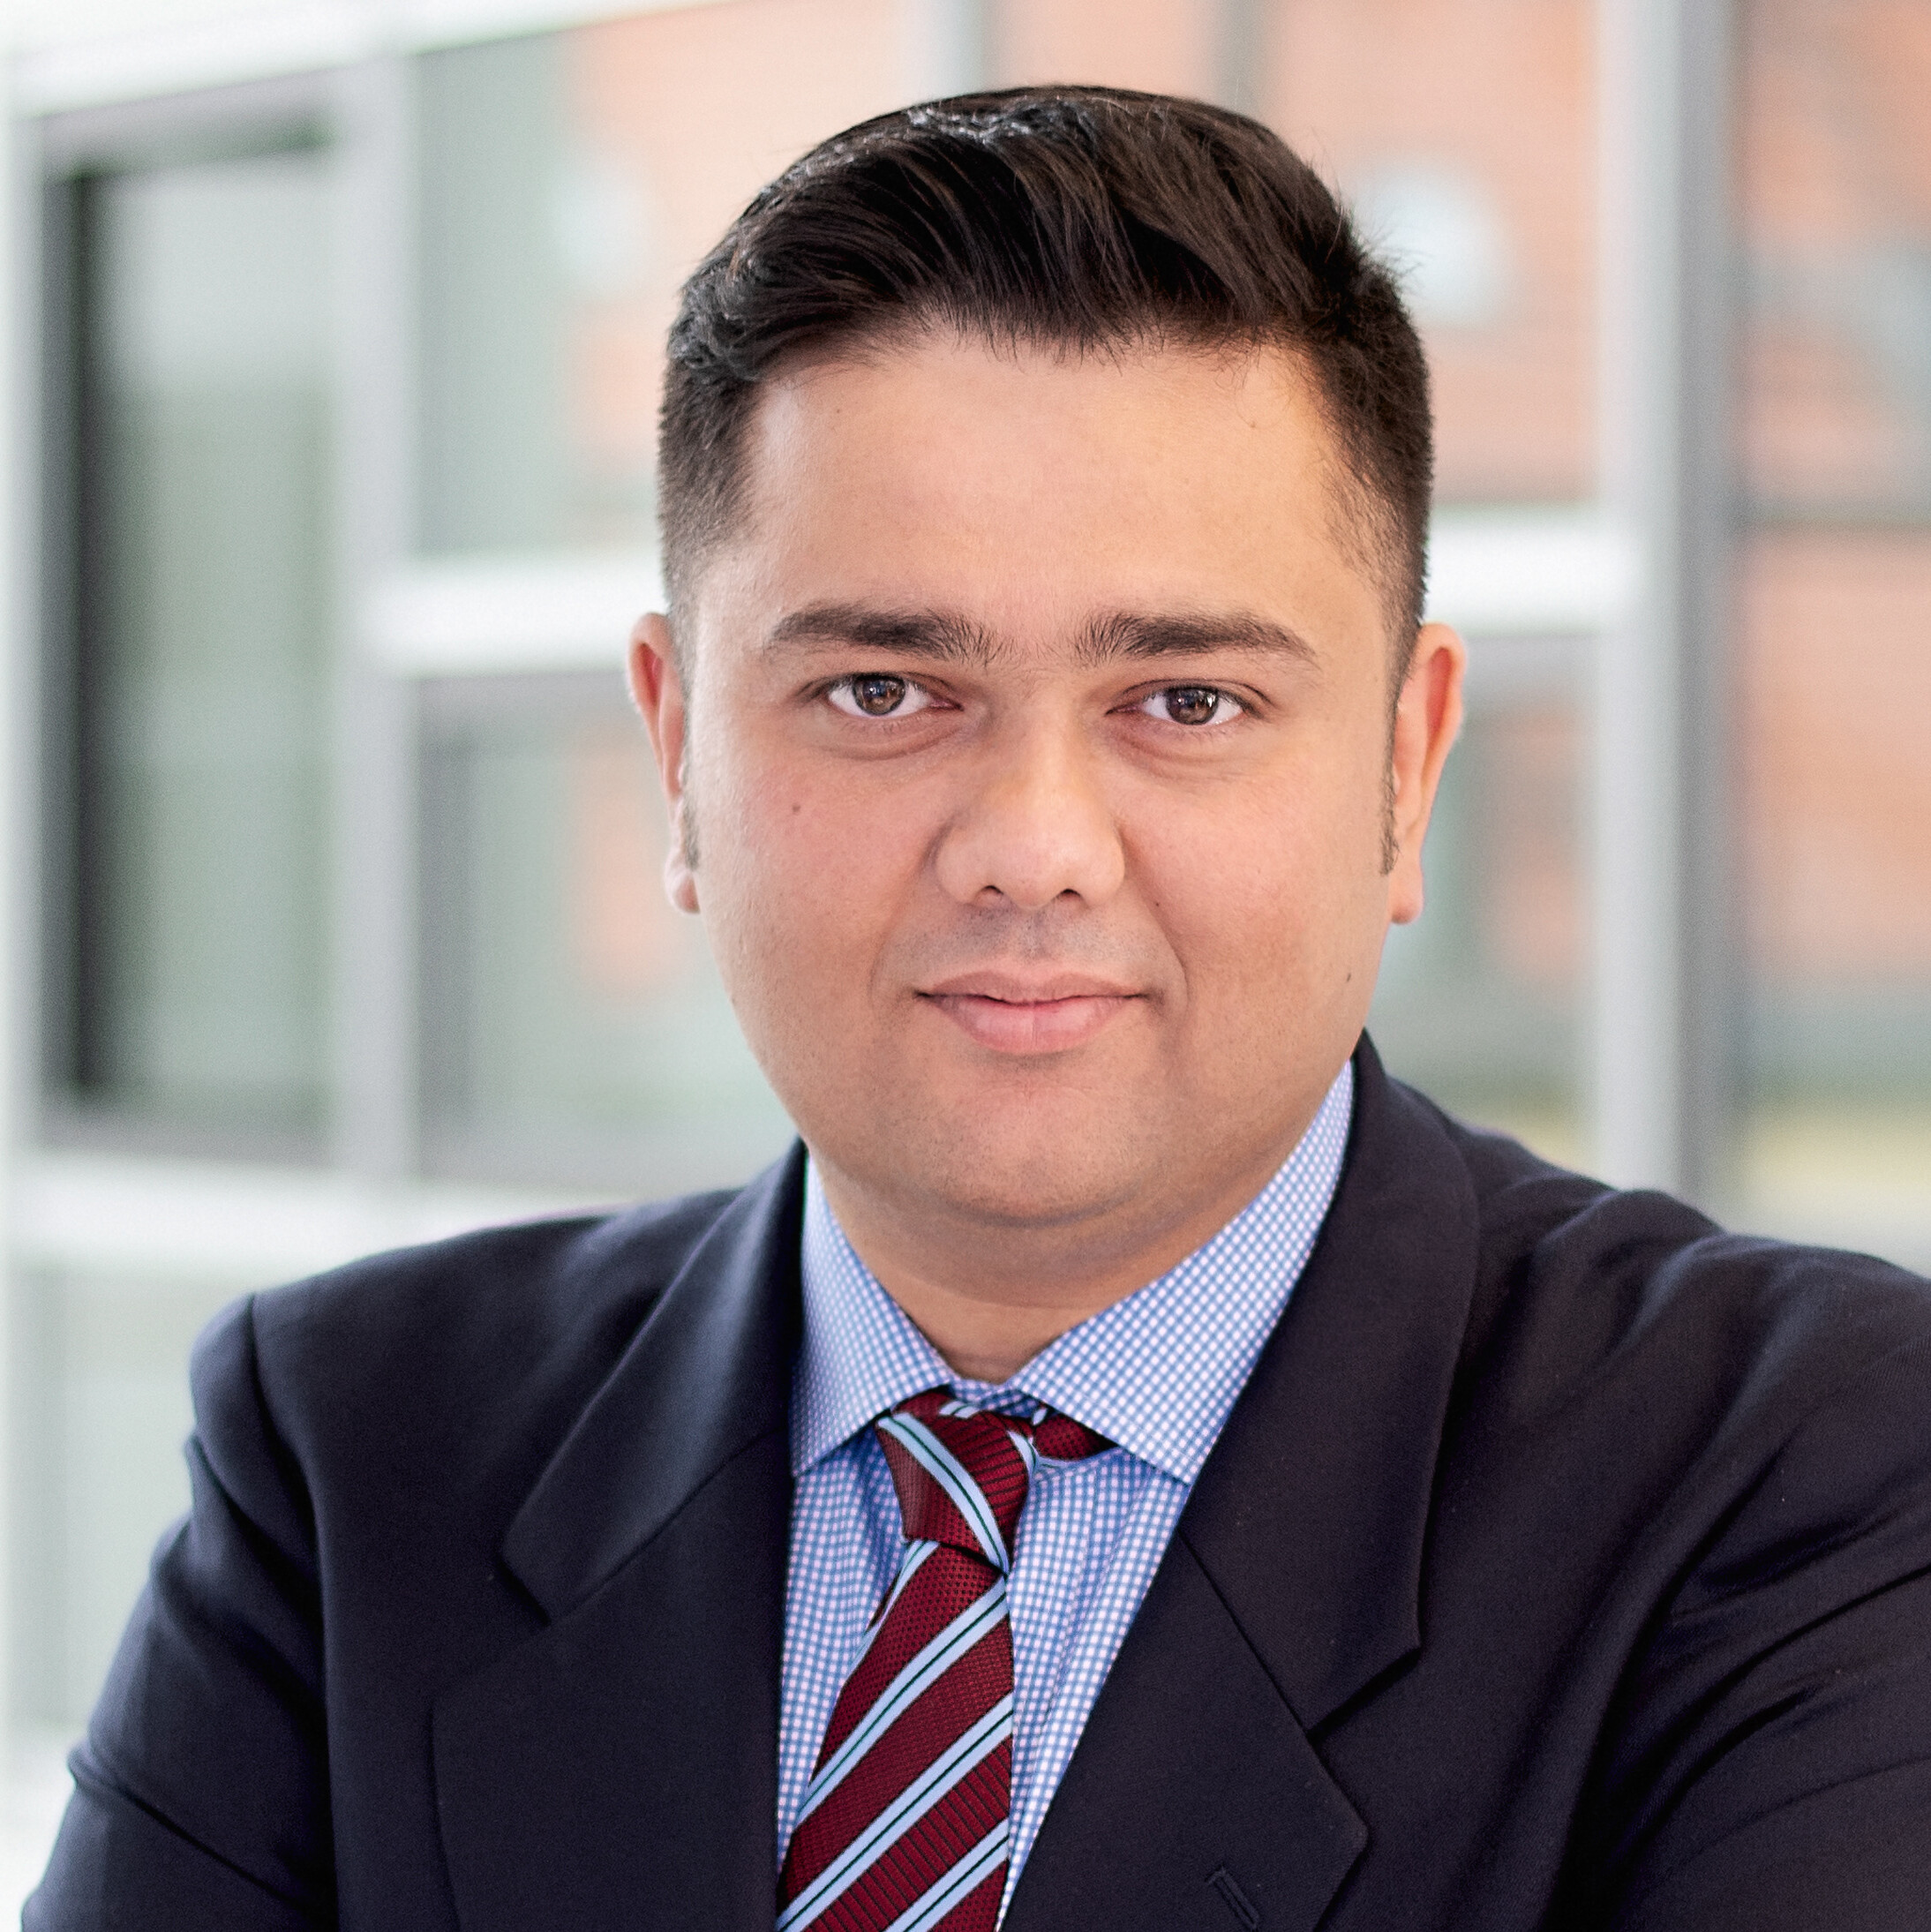 Rushabh Desai, Asia Pacific CEO for Allianz Real Estate